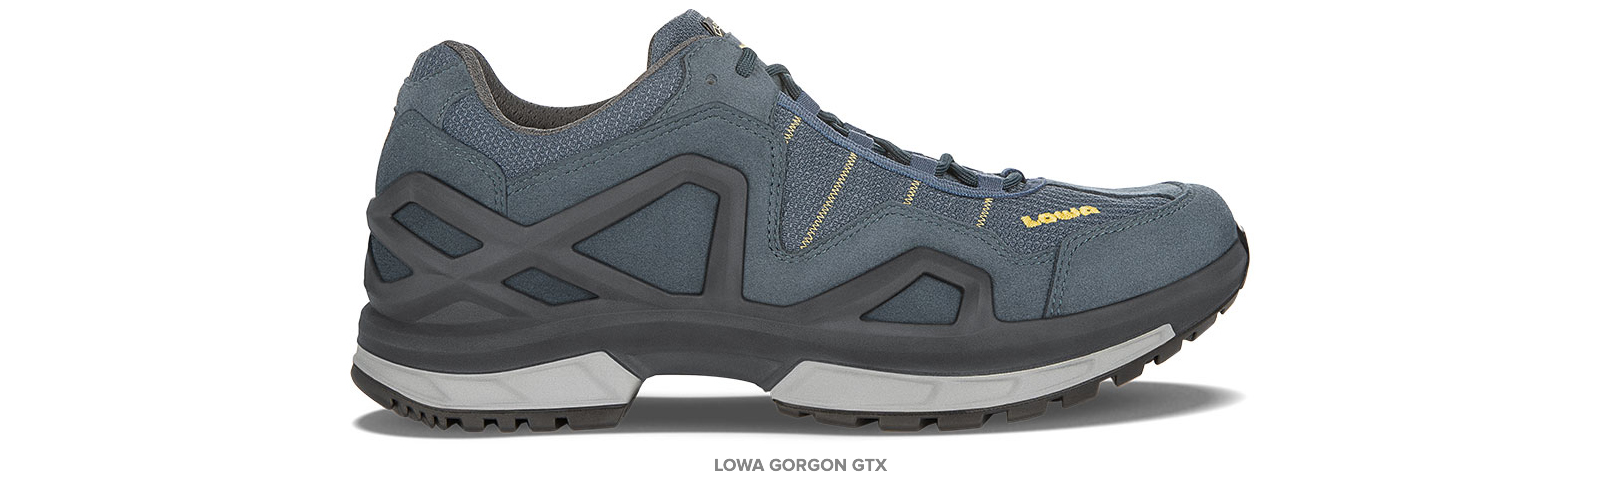 LOWA Gorgon GTX: Your Everyday Shoe 